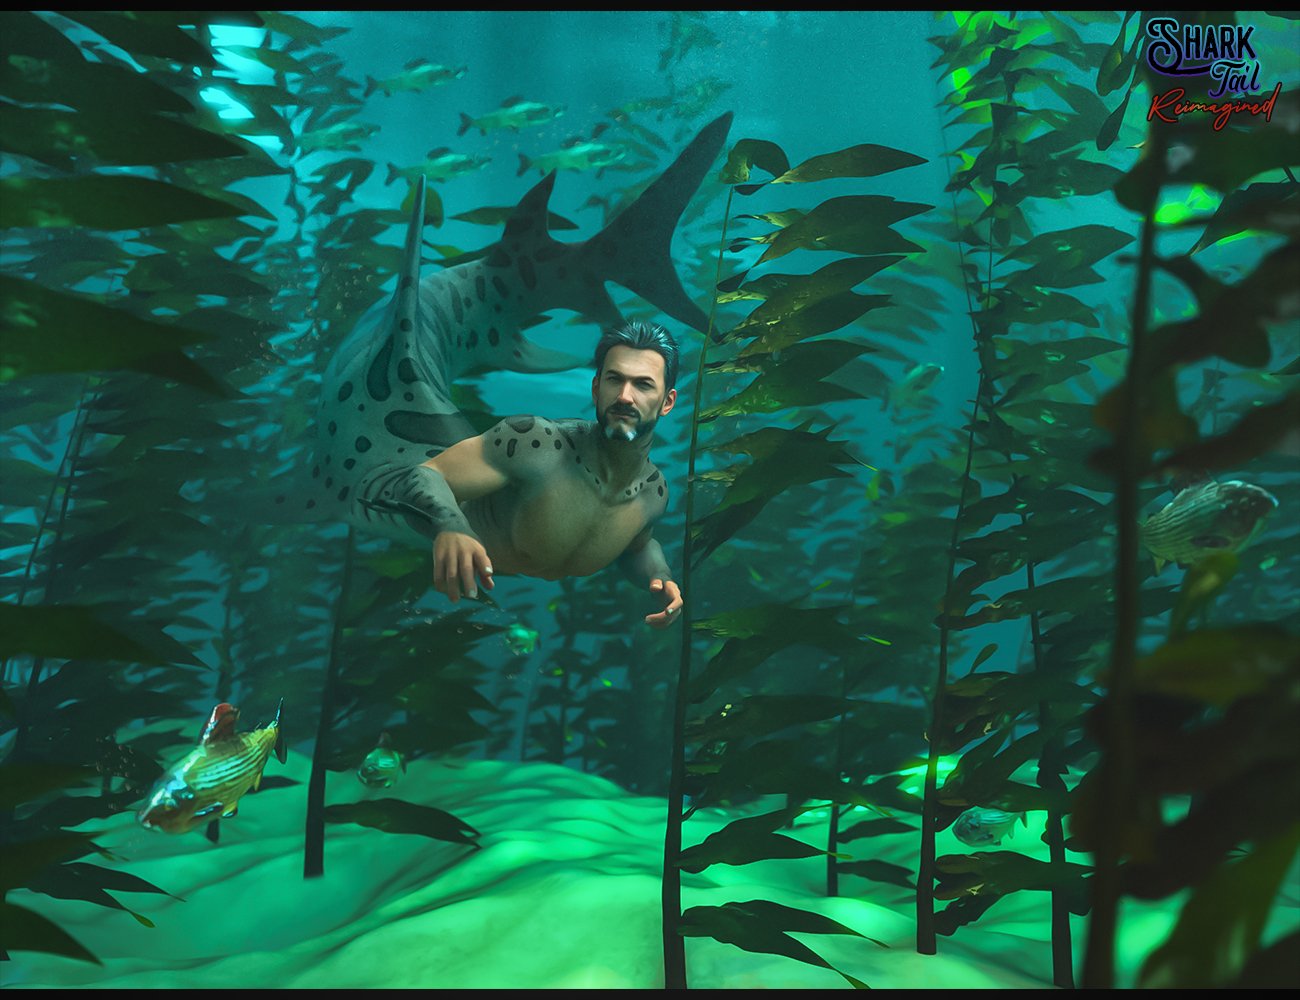 Shark Tail Reimagined Texture Add-on for Genesis 8 Males by: FenixPhoenixEsid, 3D Models by Daz 3D